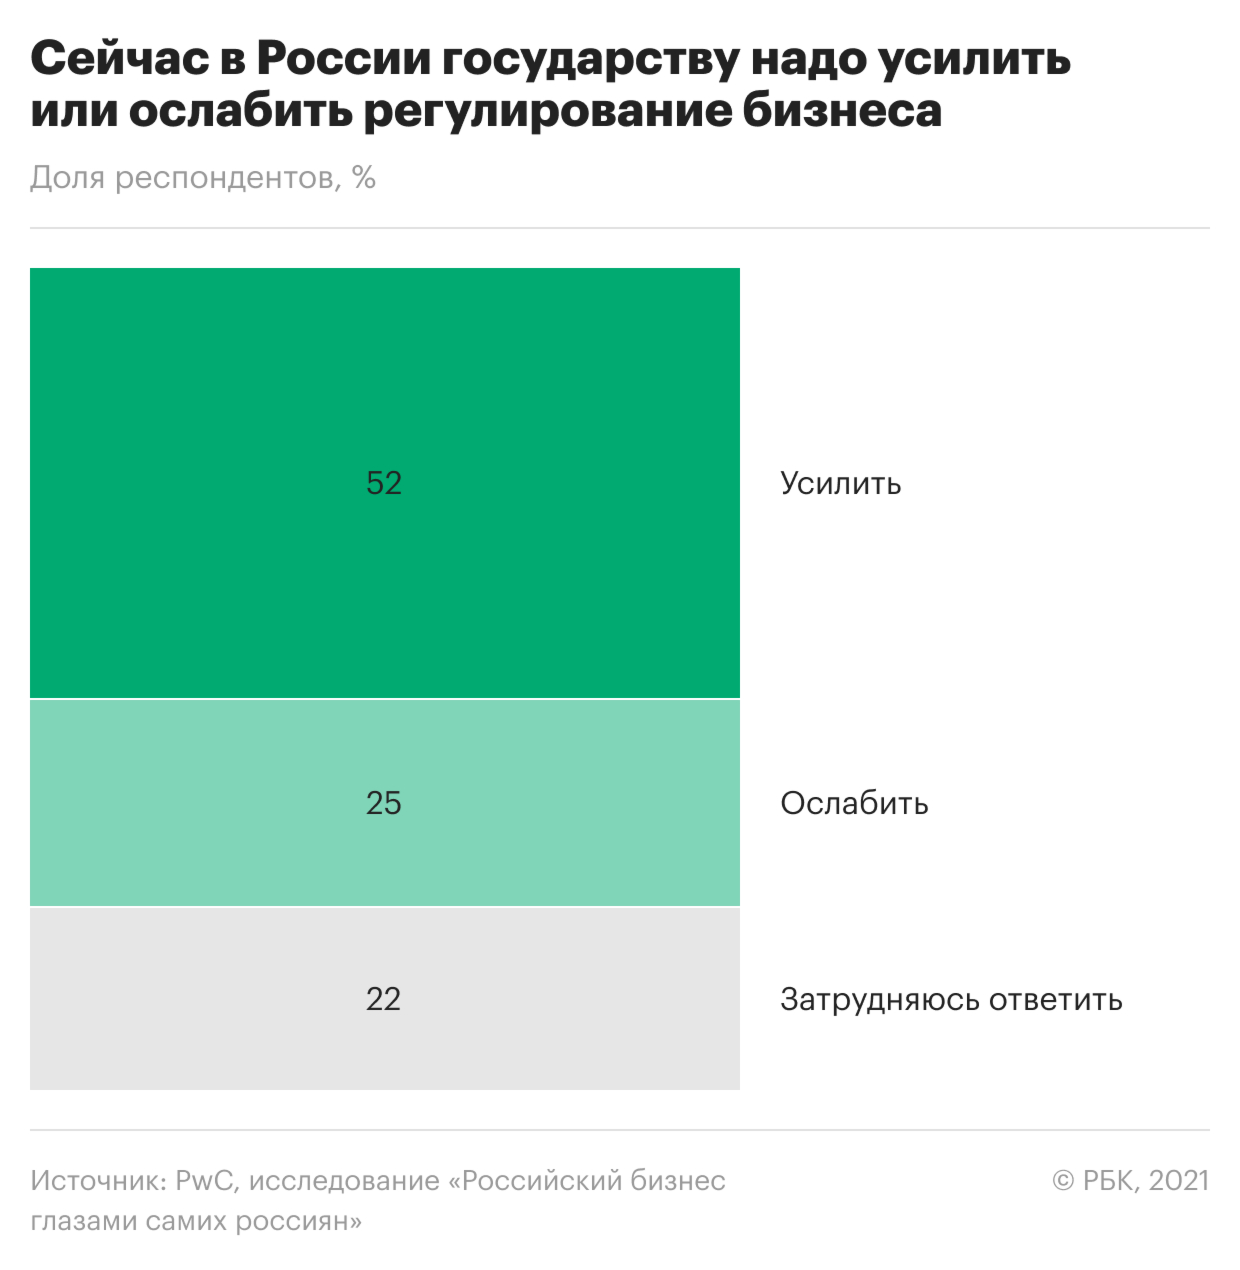 Большинство россиян высказались за усиление регулирования бизнеса